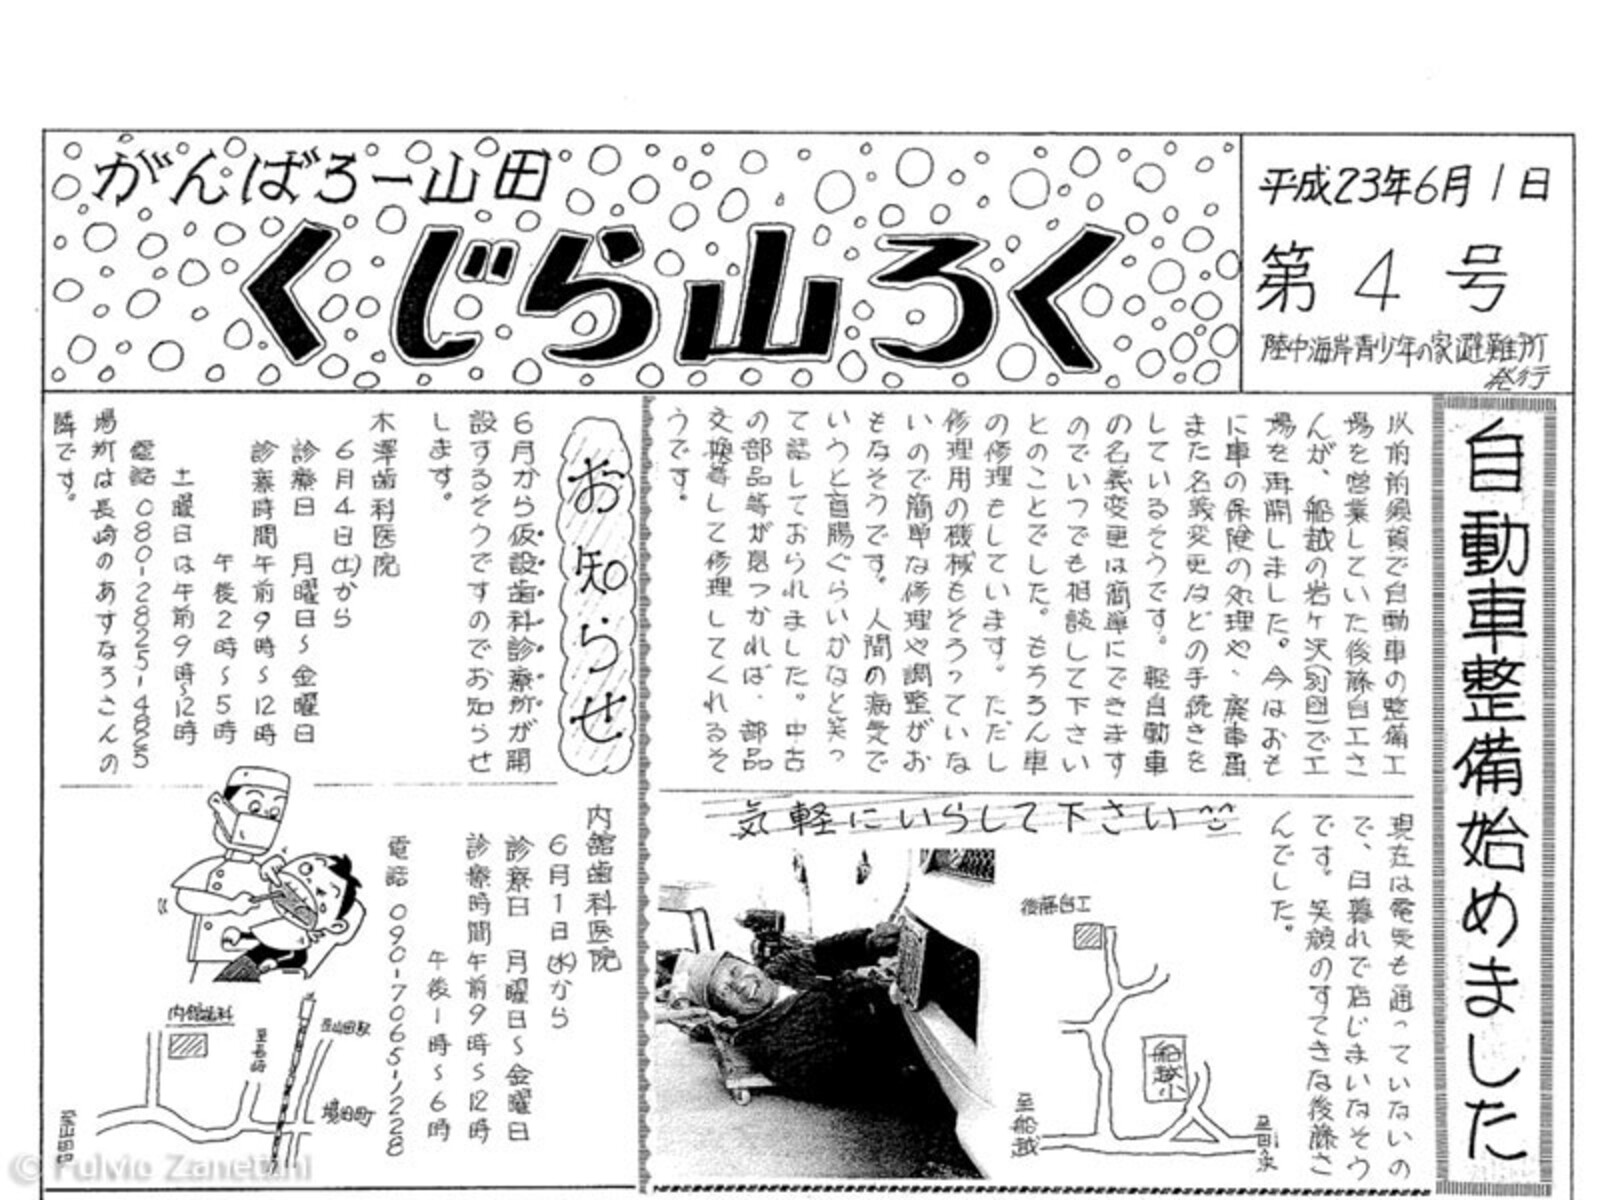 Ein Exemplar der Zeitung mit japanischen Schriftzeichen